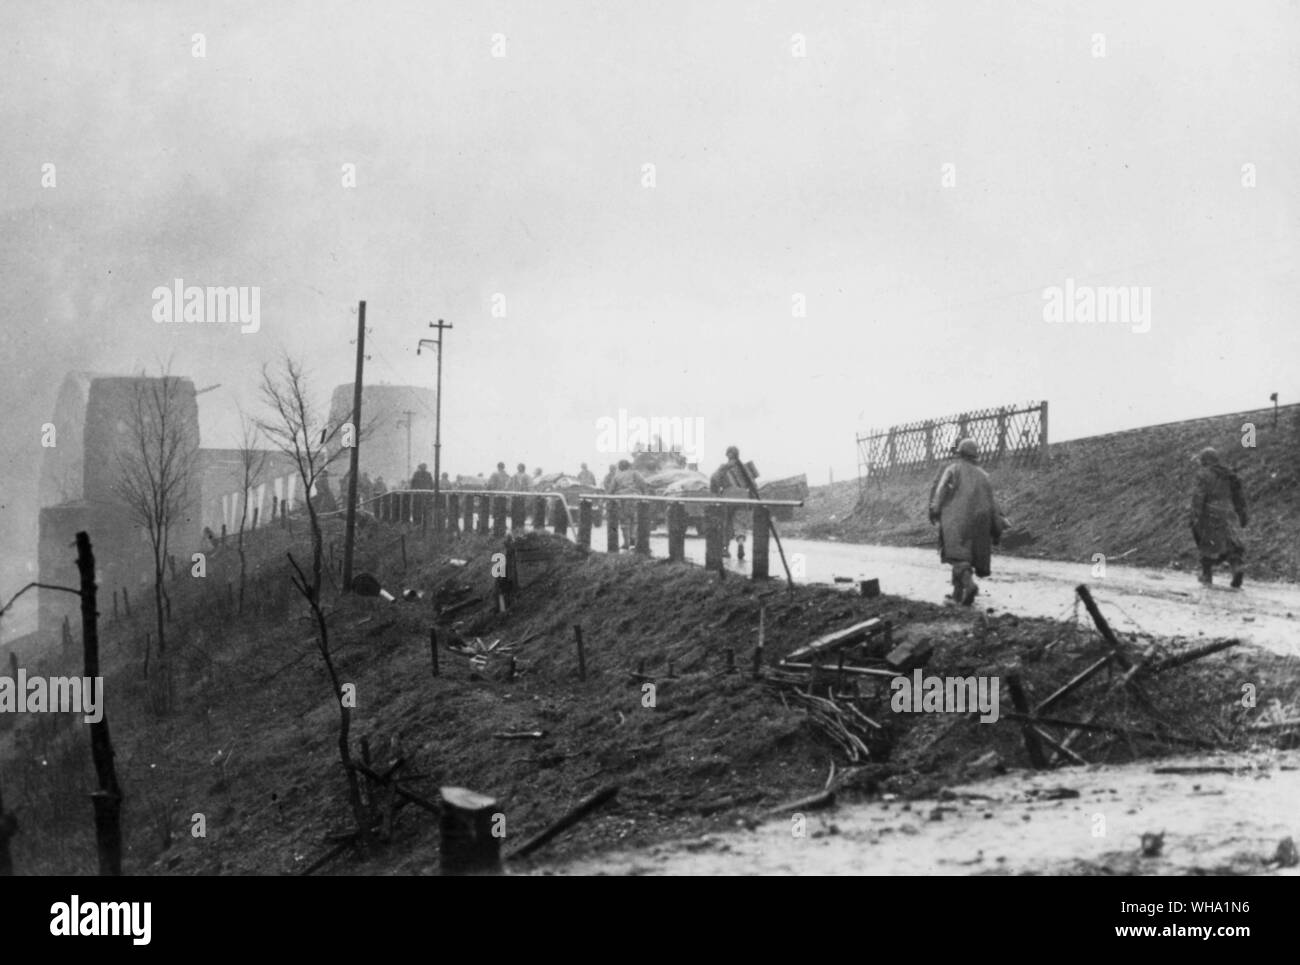 WW2: US-Soldaten den Rhein überqueren. Truppen der 9. Gepanzerten Division, 1.US-Armee bewegen sie sich über die Brücke von Remagen, Deutschland eine budgehead in der Stärke auf dem Ostufer zu etablieren. US Infanterie Einheiten folgen die gepanzerten Kräfte zu konsolidieren. März 1945 (?). Stockfoto